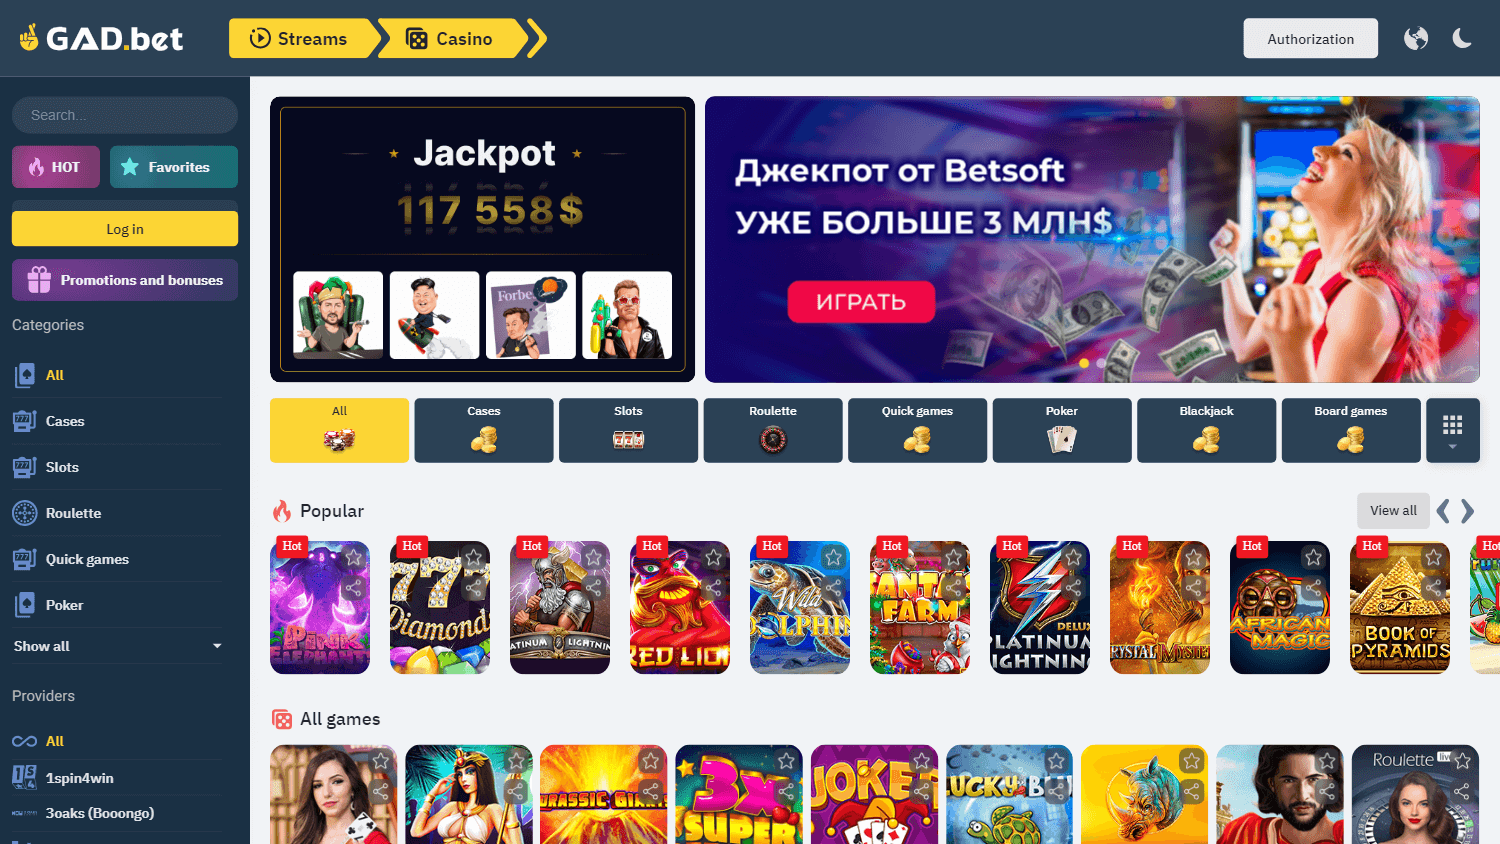 gad.bet_casino_game_gallery_desktop